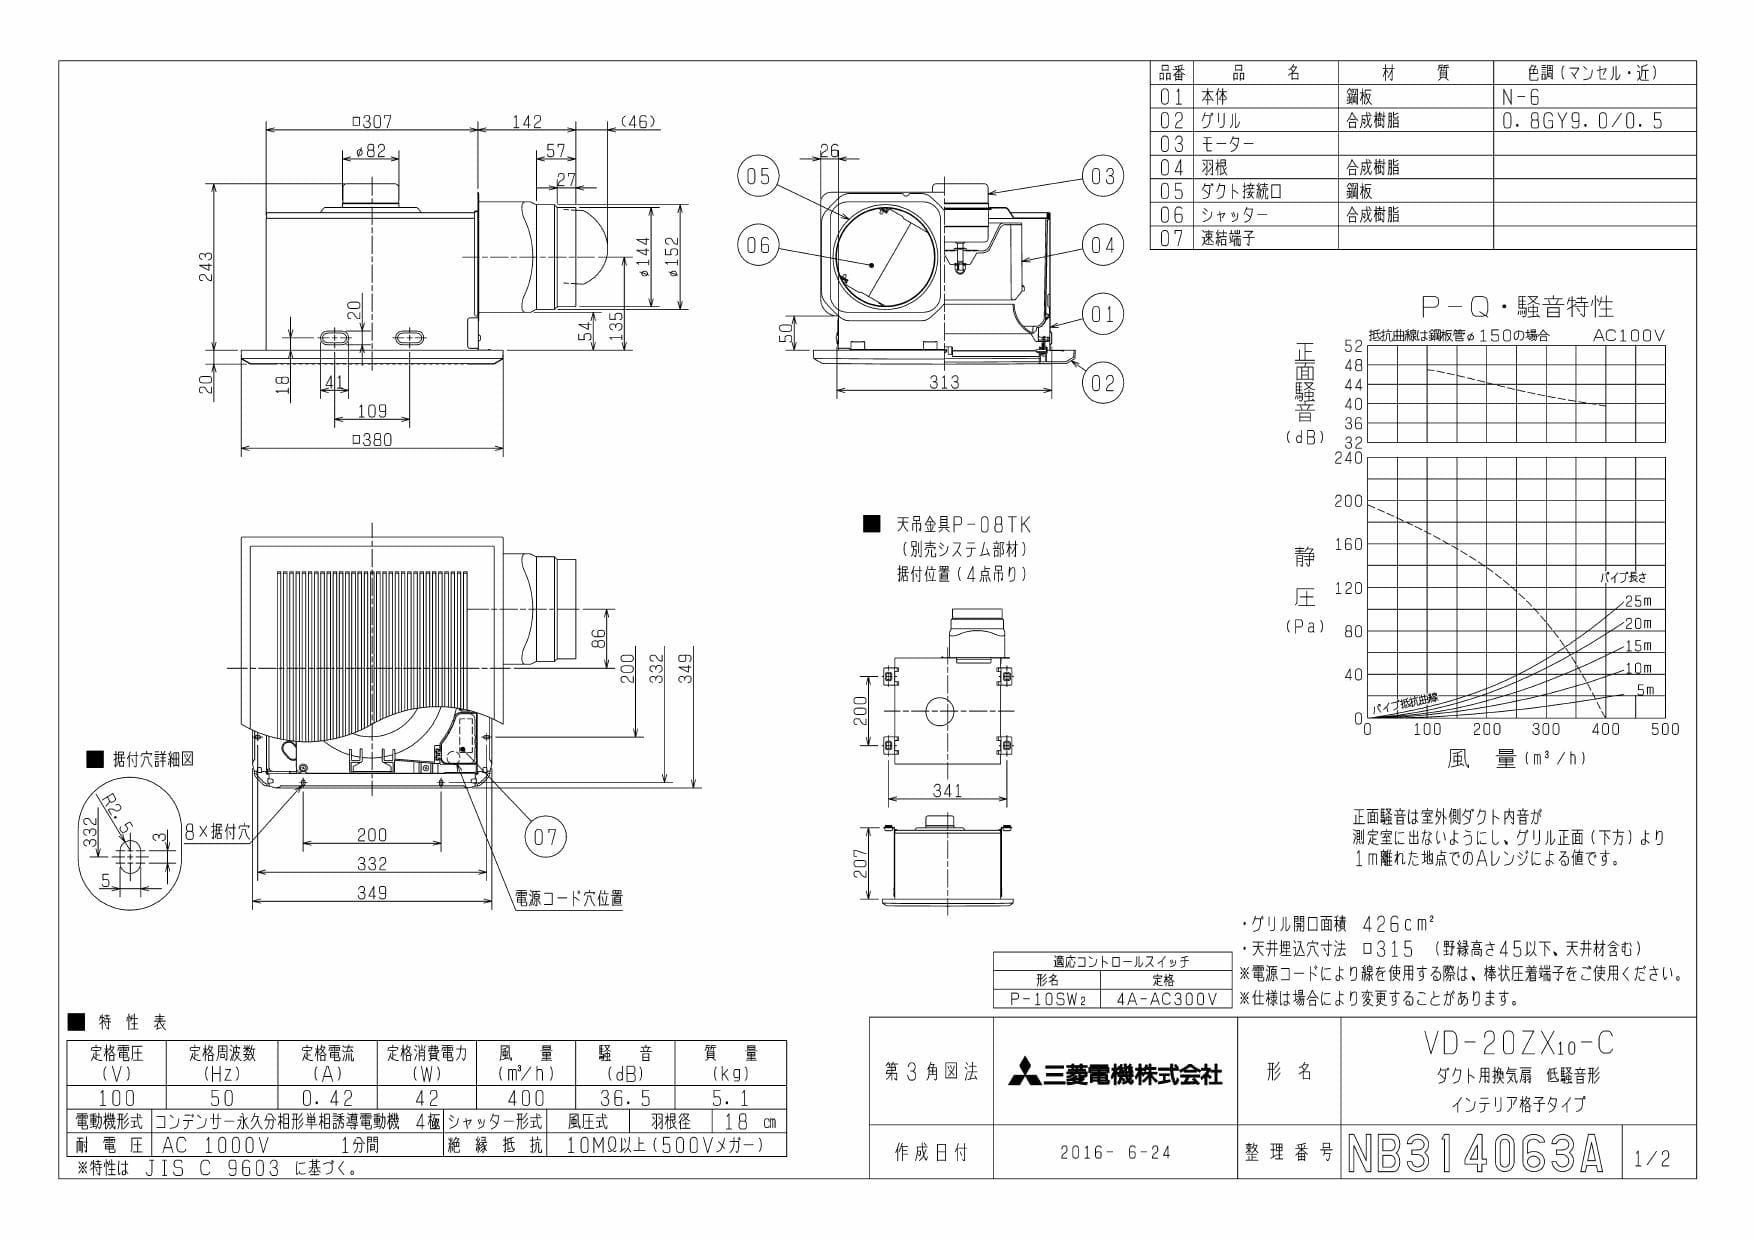 三菱電機 VD-20ZX10-C商品図面 | 通販 プロストア ダイレクト